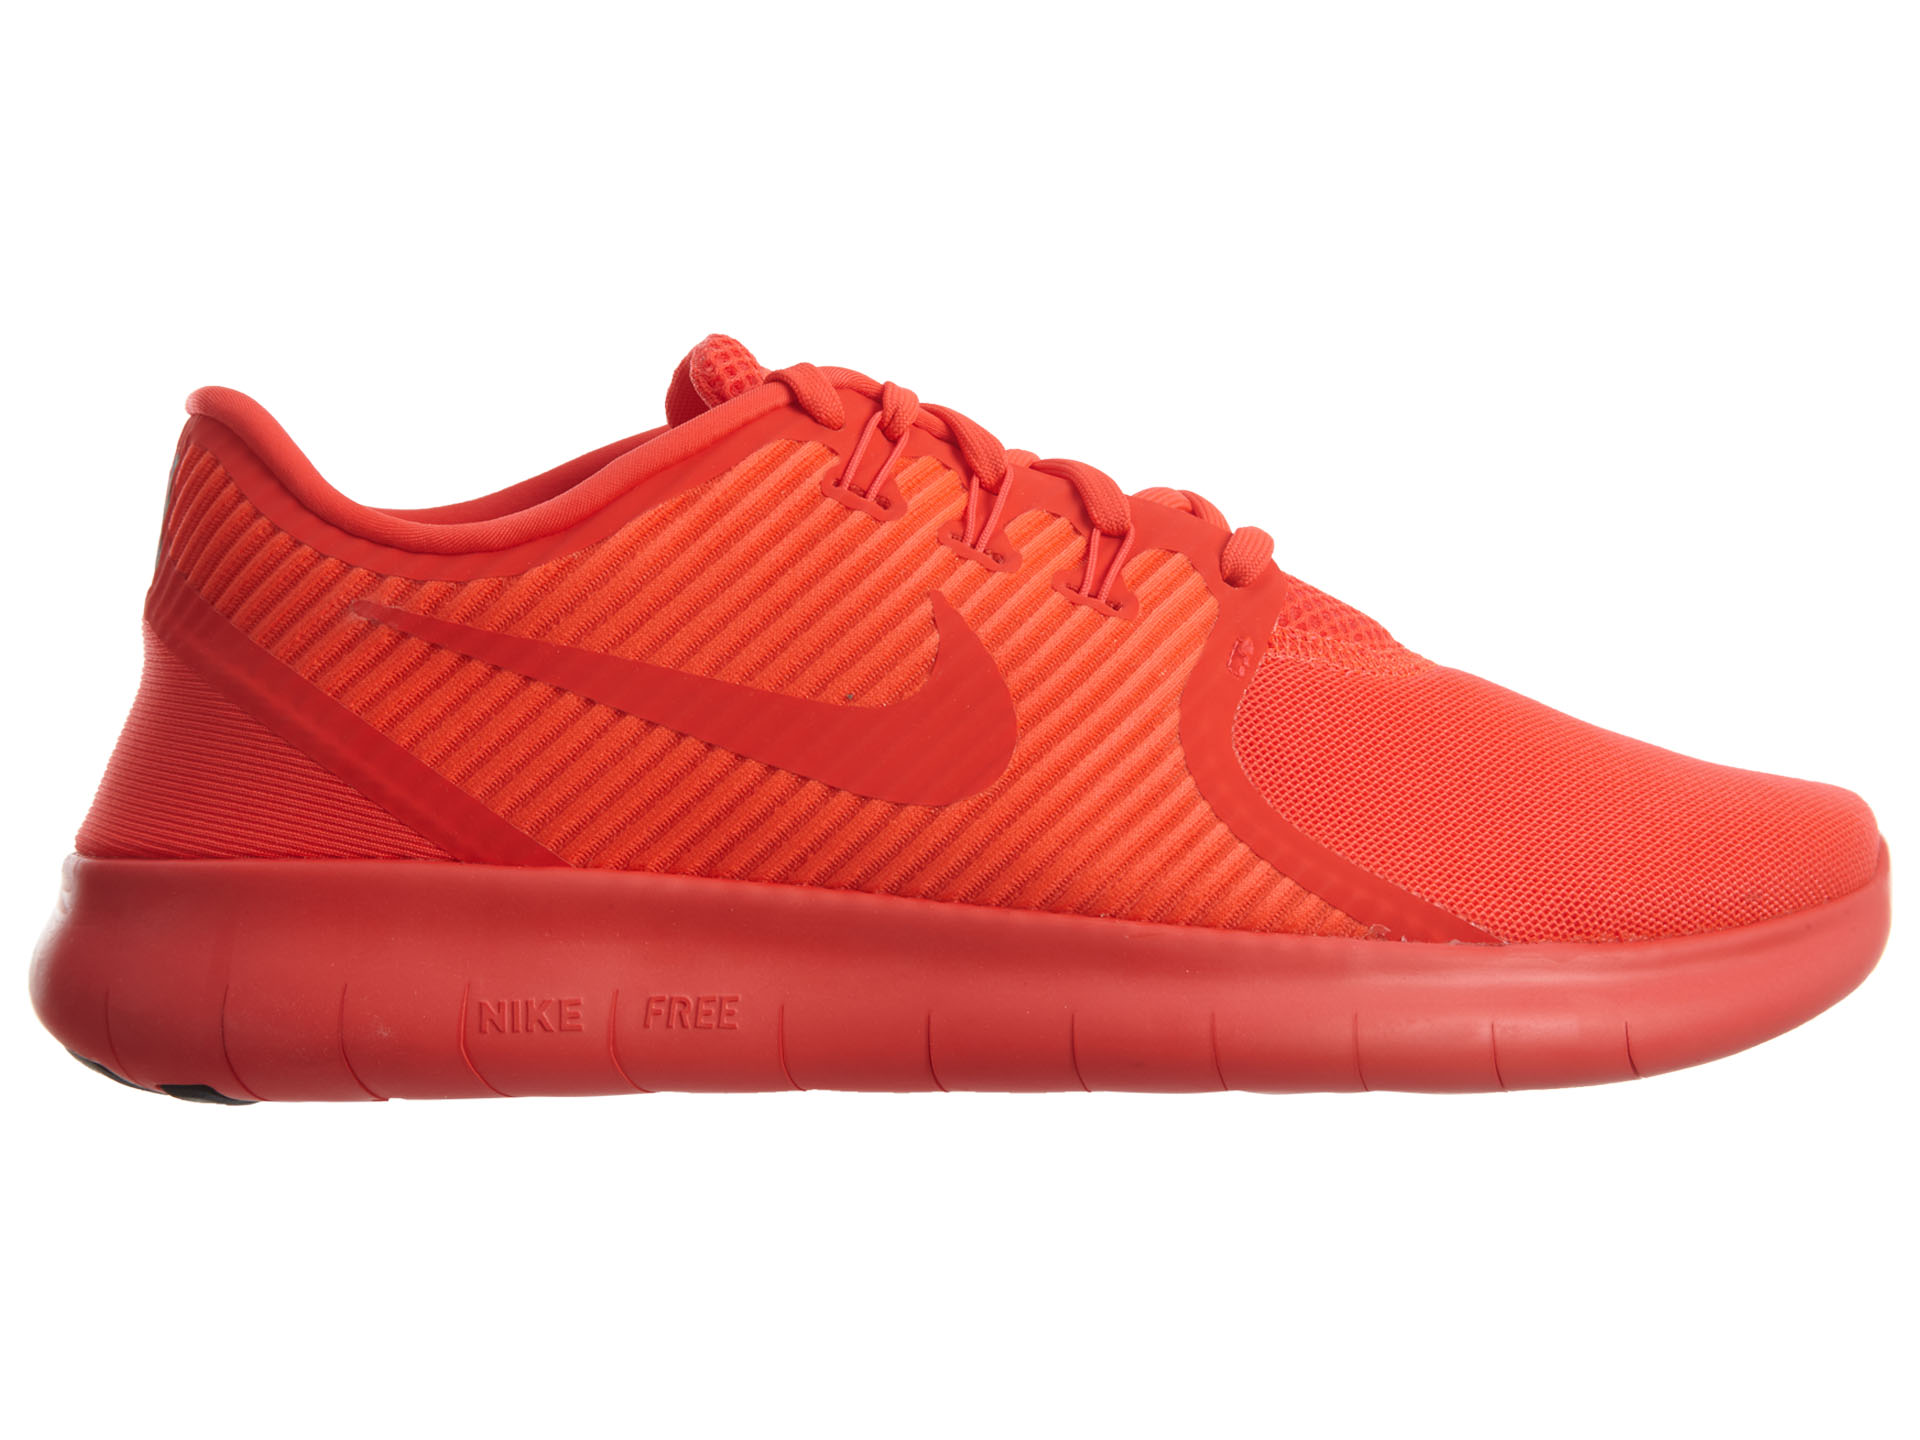 Nike Free Rn Cmtr Bright Crimson Bright Crimson - 831510-601 - US